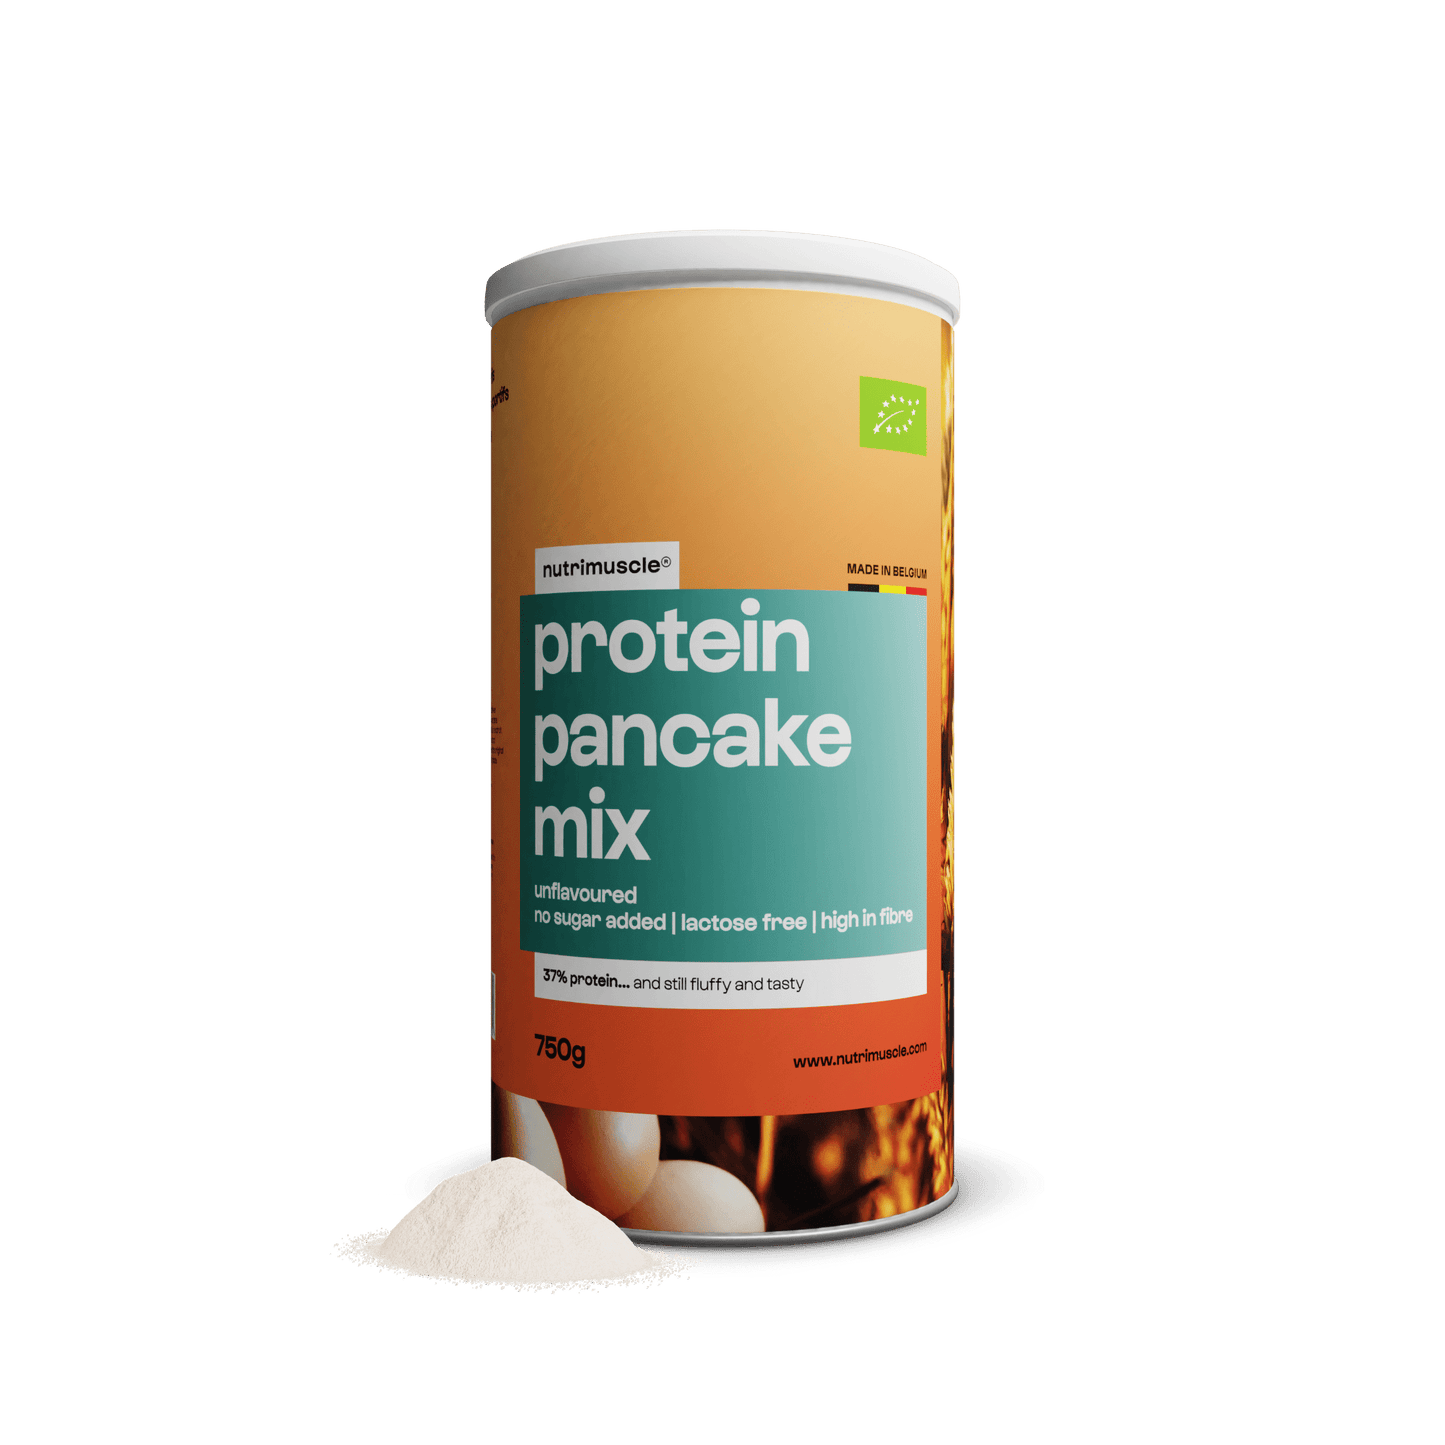 Nutrimuscle Protéines Mix pour pancakes protéinés bio